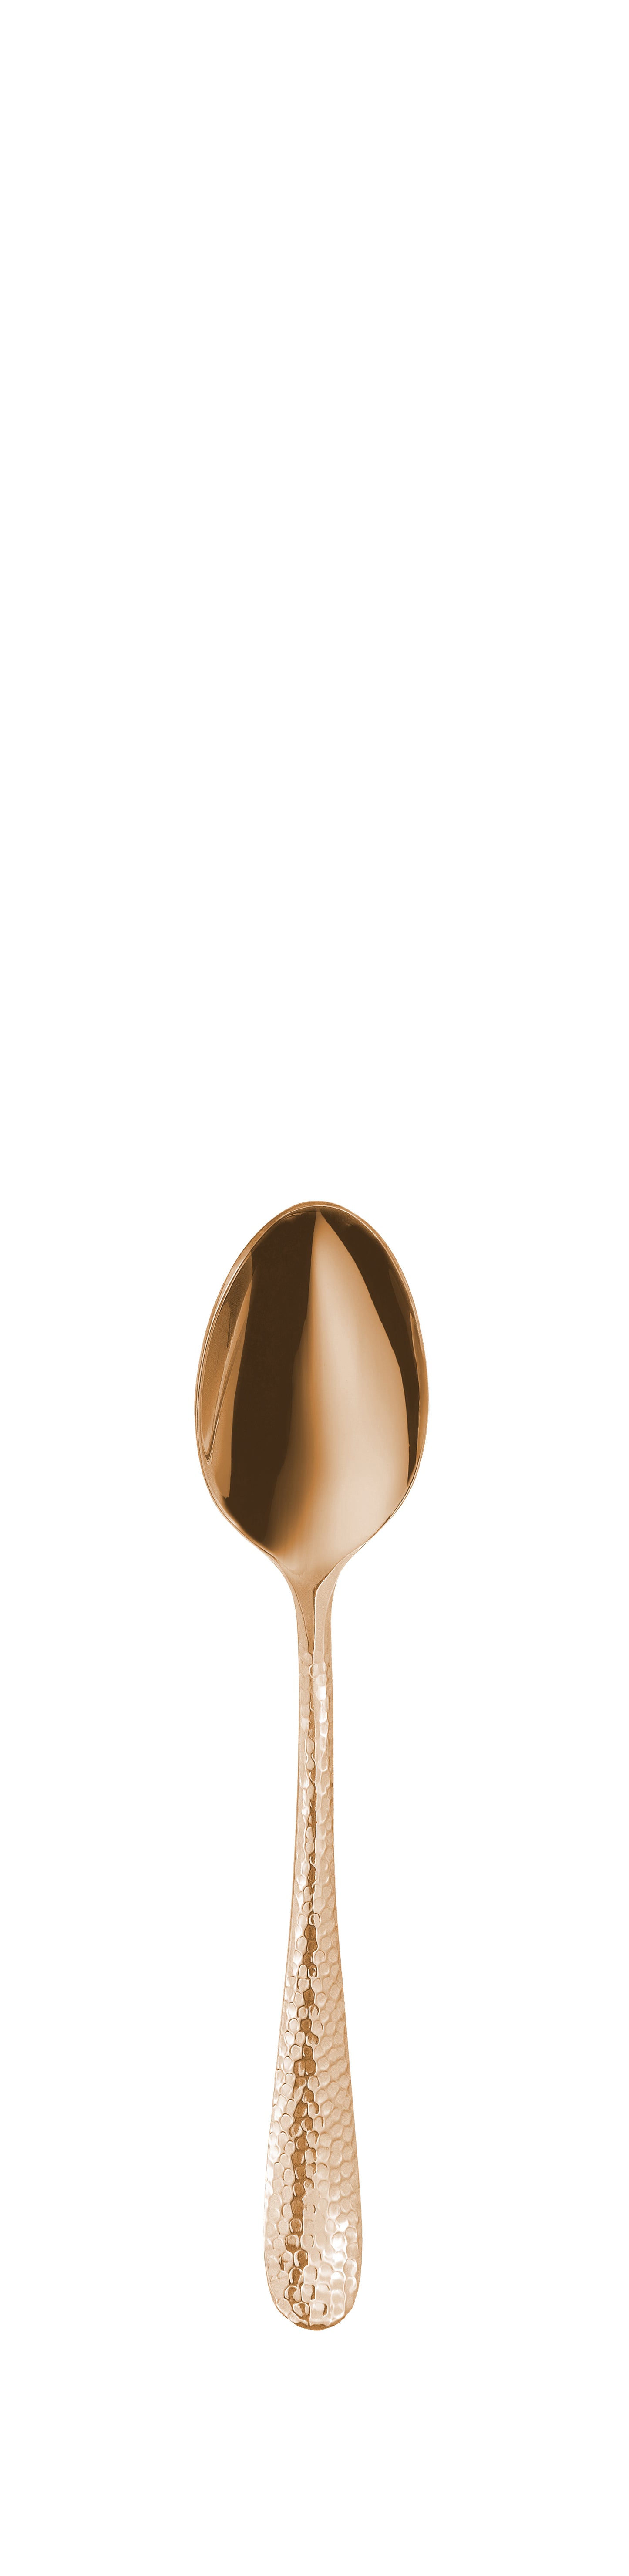 Espresso spoon SITELLO PVD pale copper 108mm